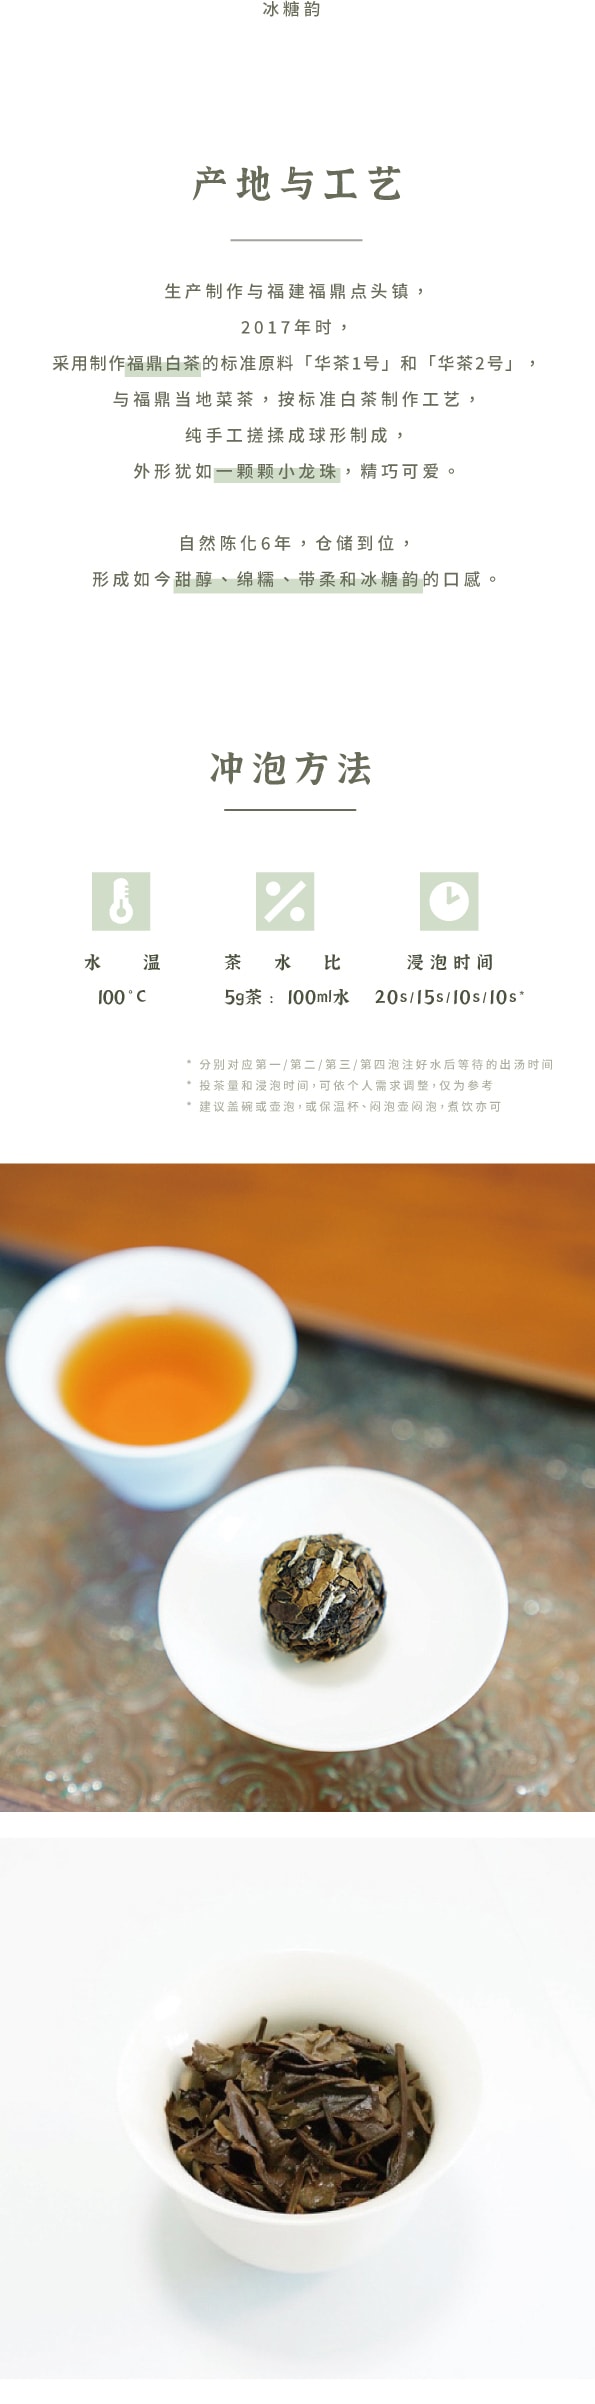 美國 趙趙的茶 ZhaoTea 貢眉龍珠 老白茶 福建福鼎 香糯甜醇 一顆一泡 60g